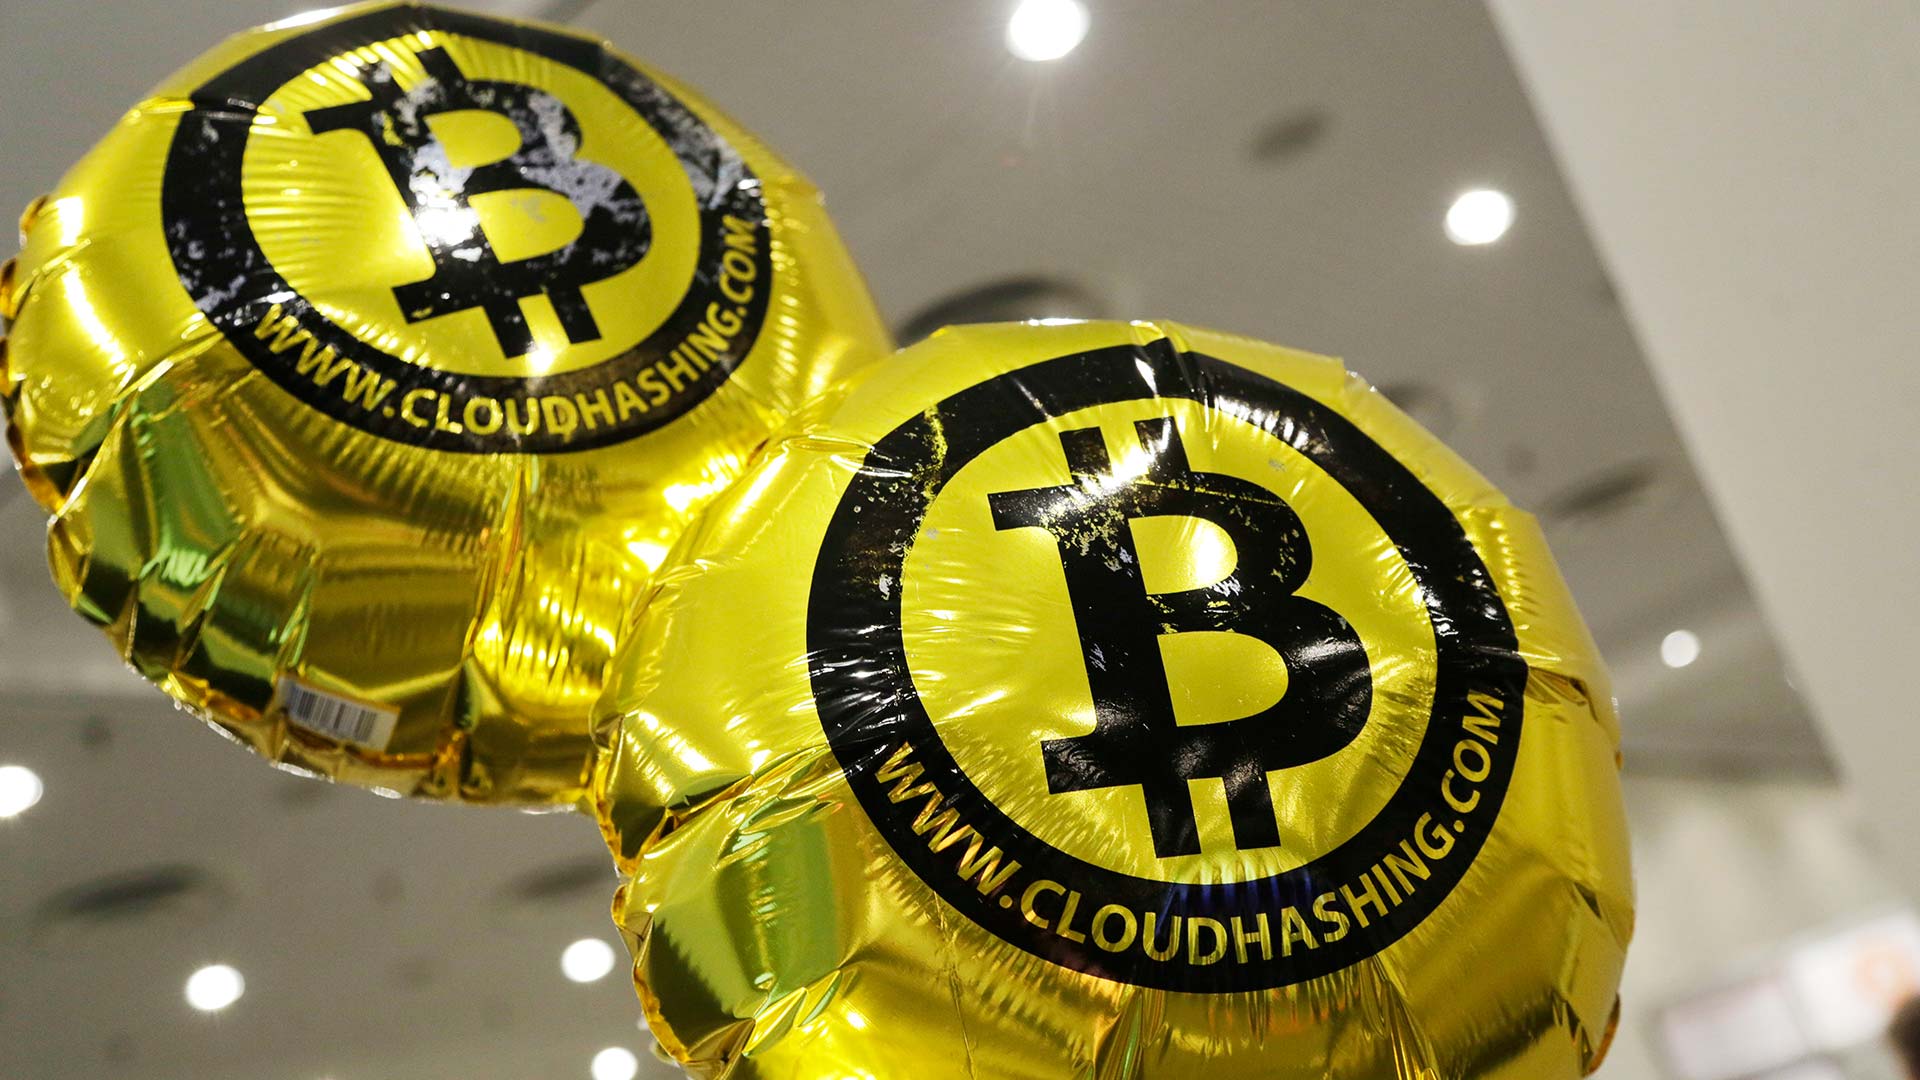 Un economista de Yale advierte de que el Bitcoin es una "burbuja especulativa peligrosa"